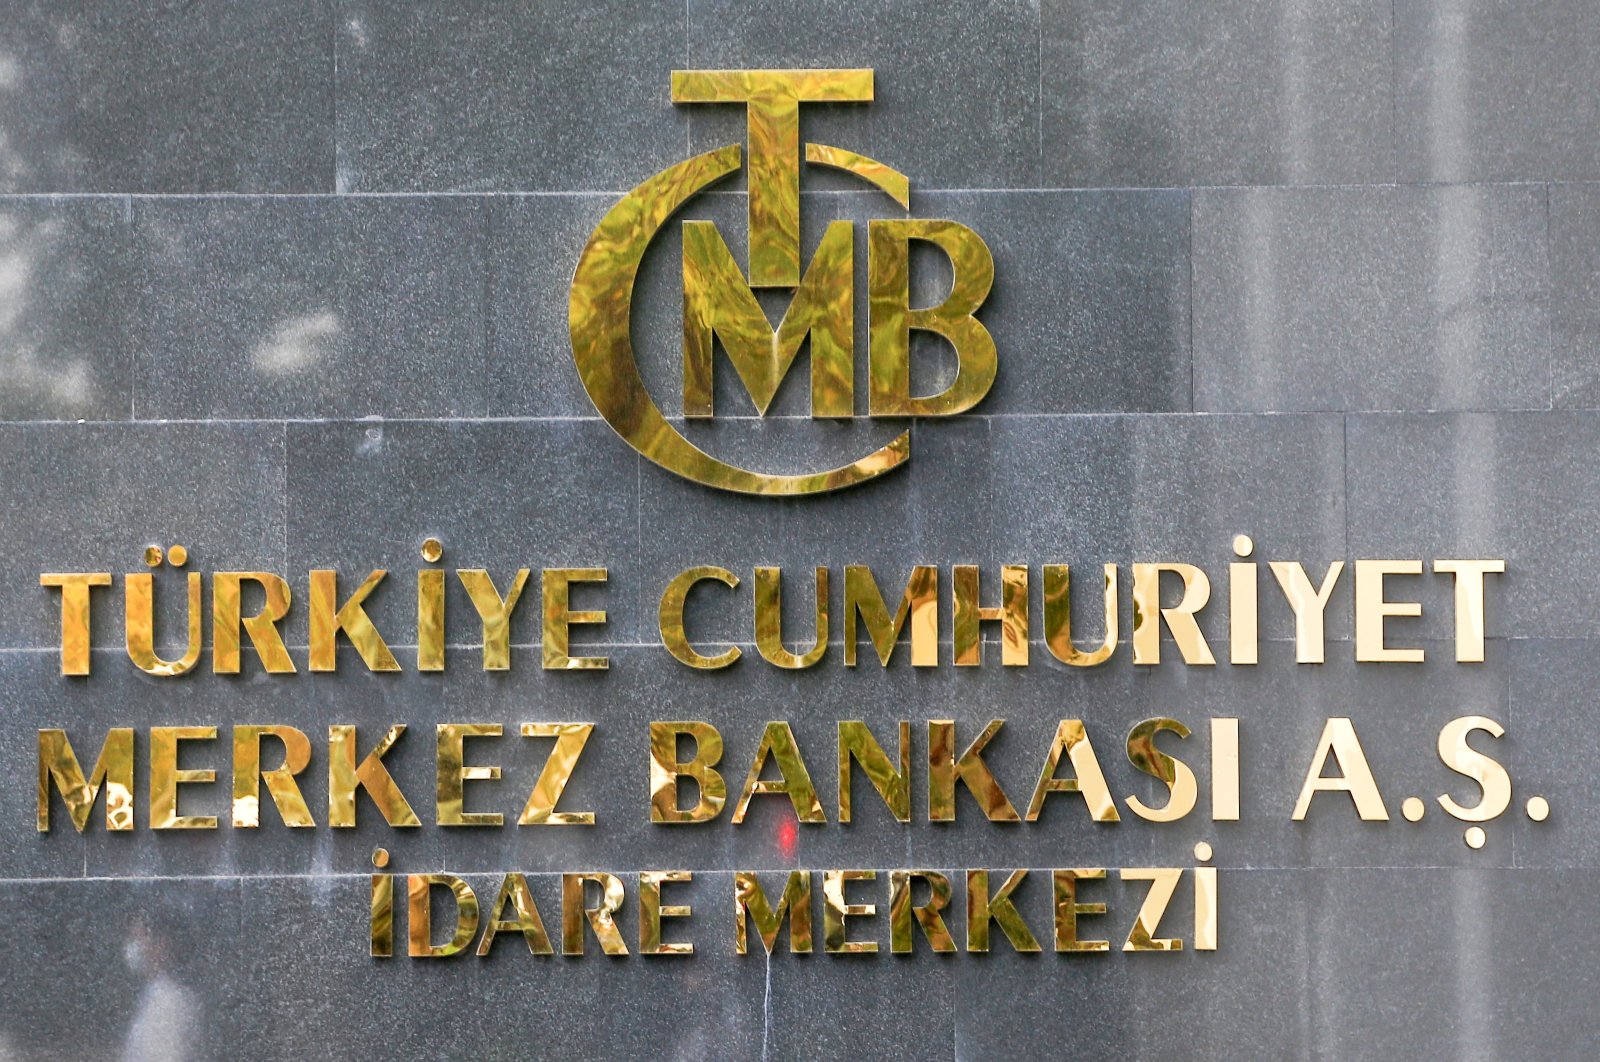 Bank sentral Turki mempertahankan kebijakan di bawah strategi liraisasi